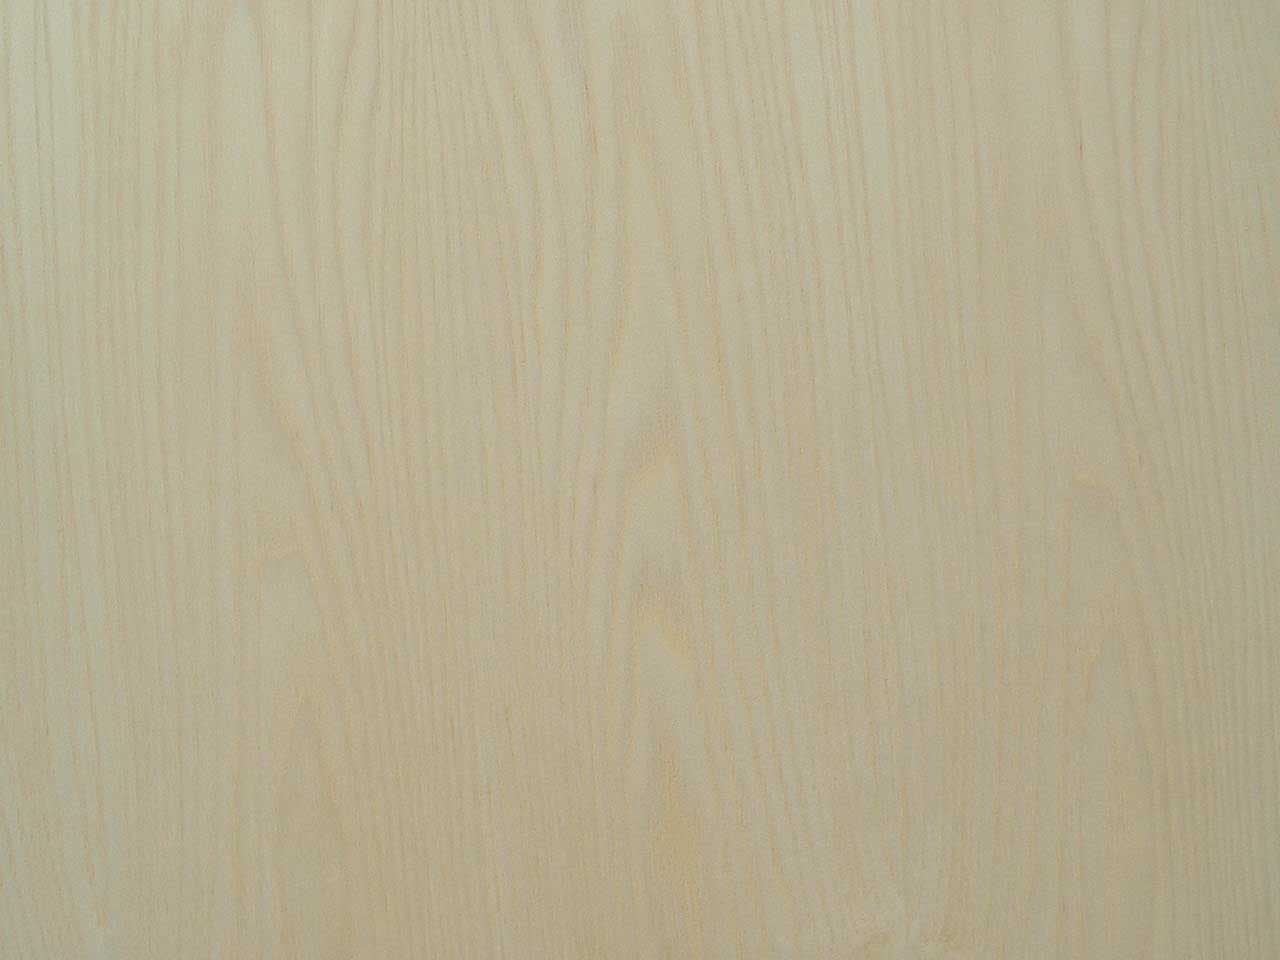 Mahogany plywood 3 4